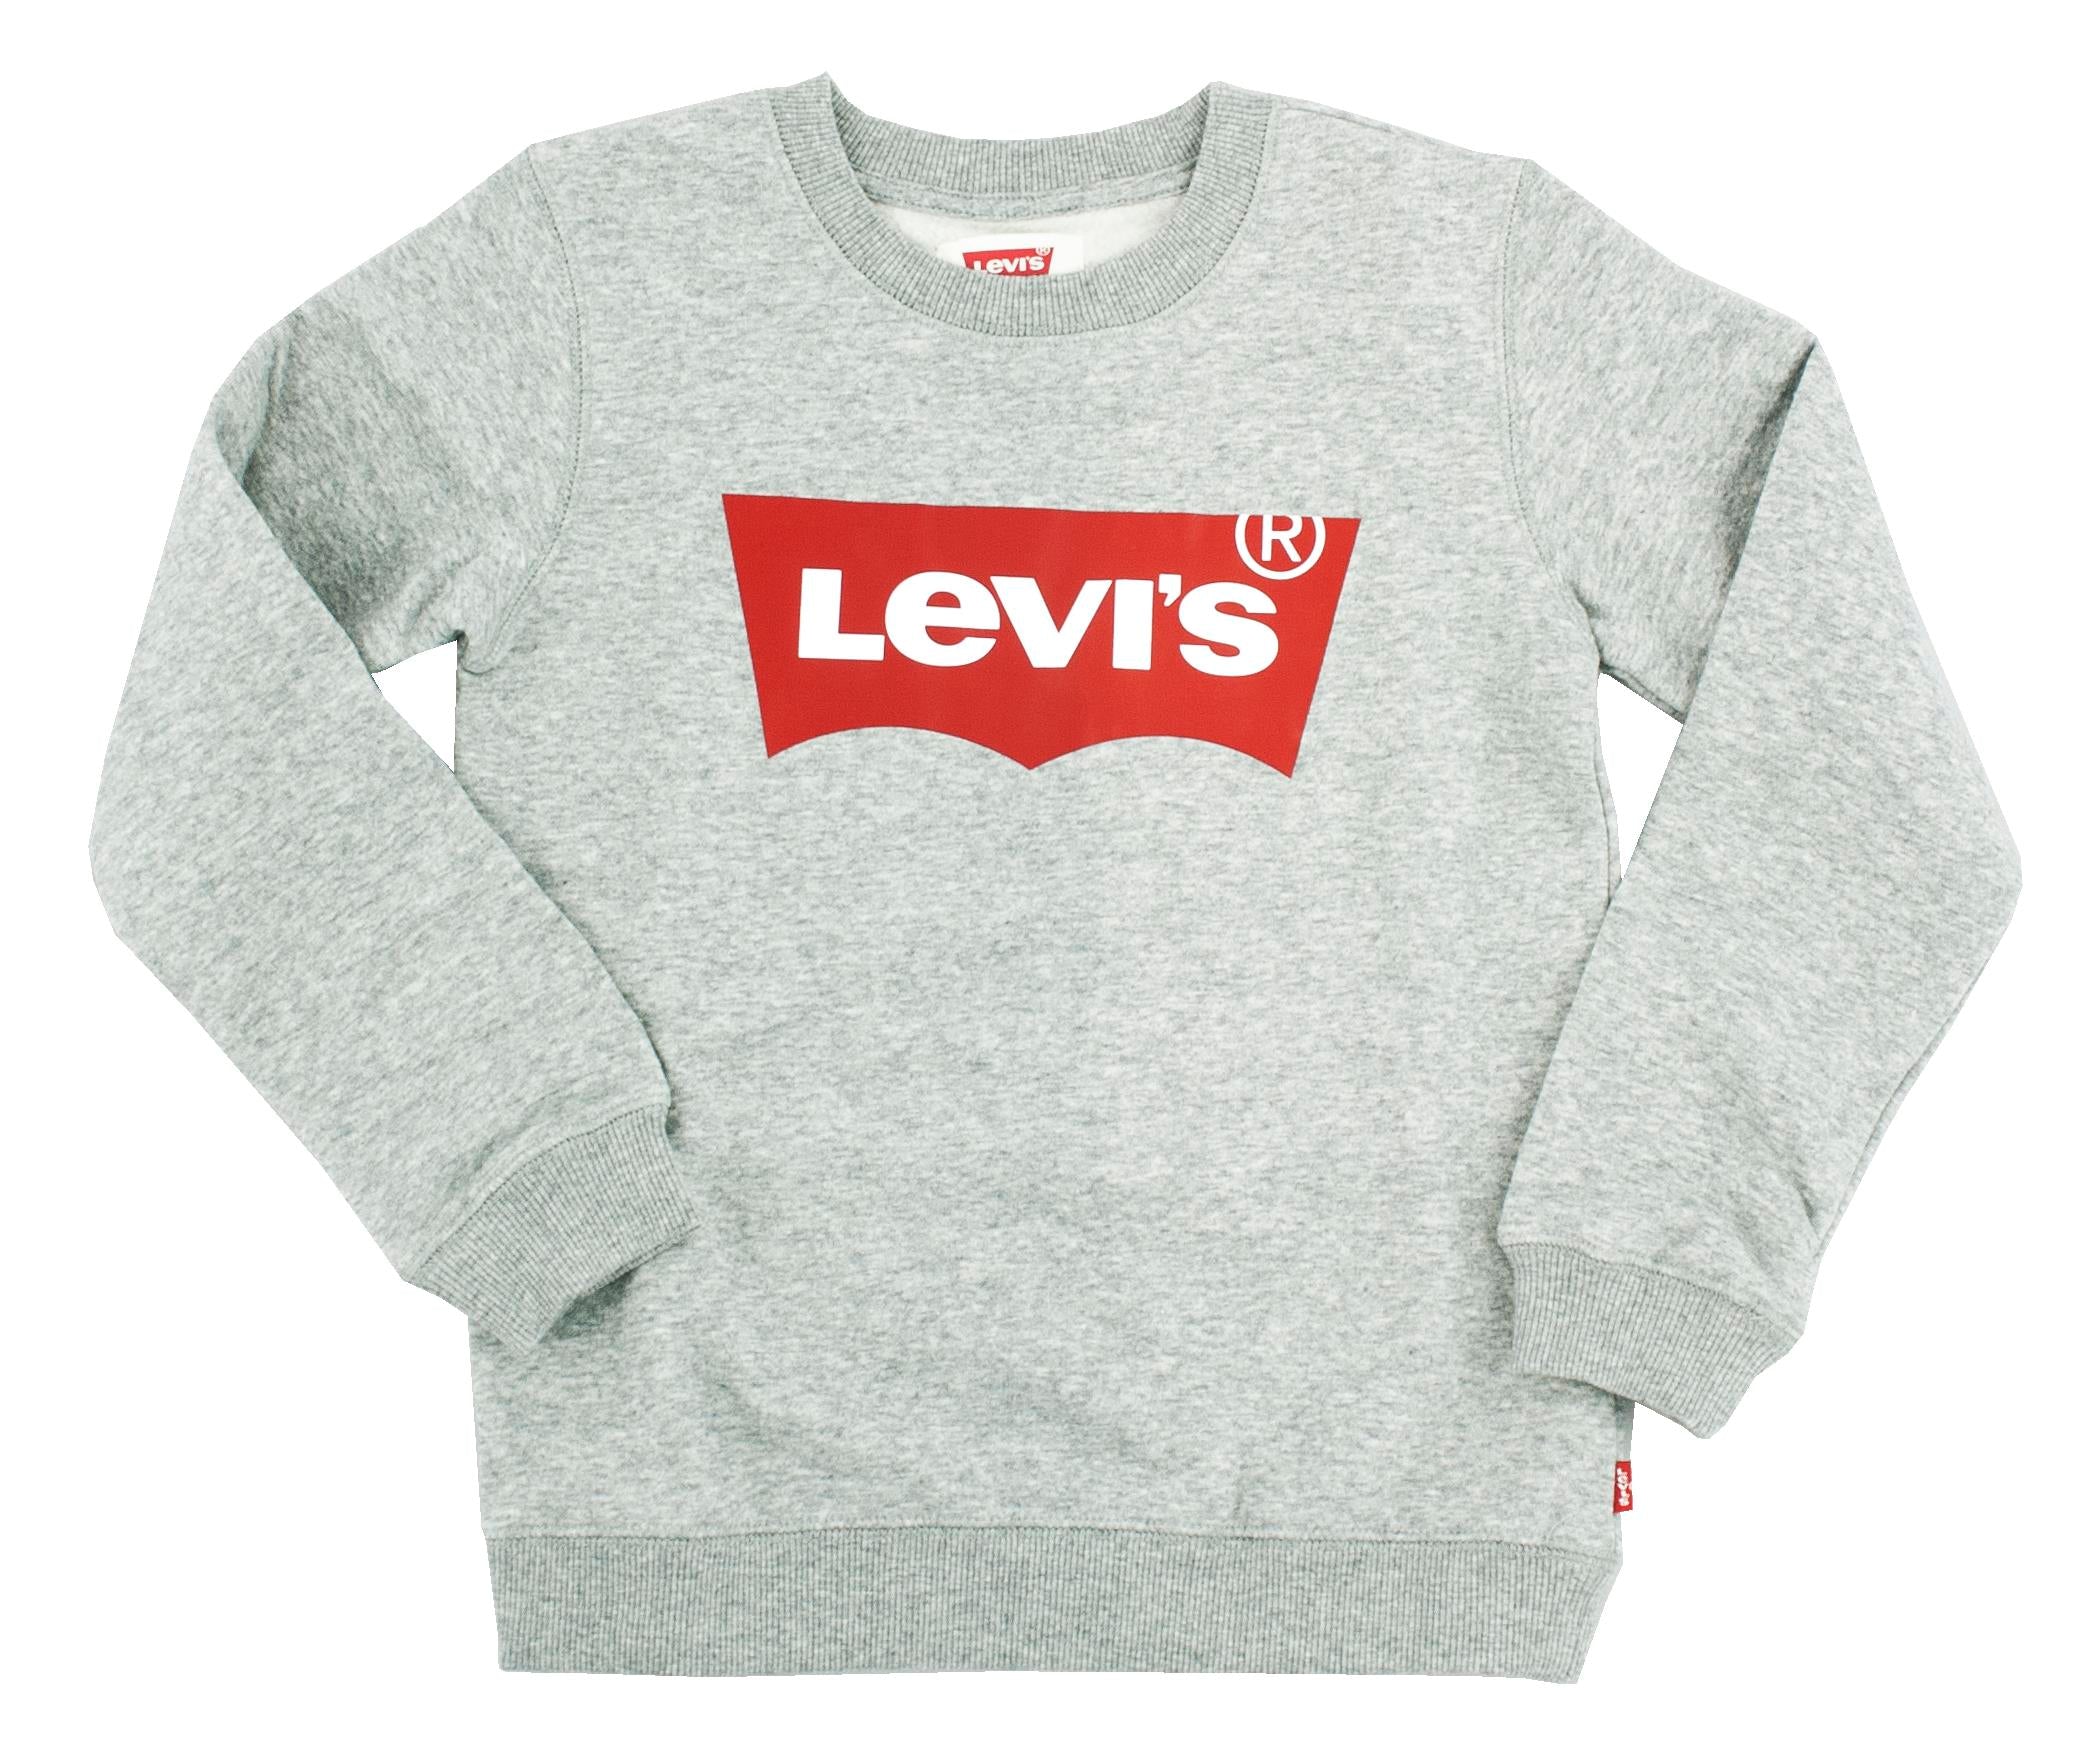 LEVIS
Levi's graues Fledermaus-Sweatshirt mit Rundhalsausschnitt